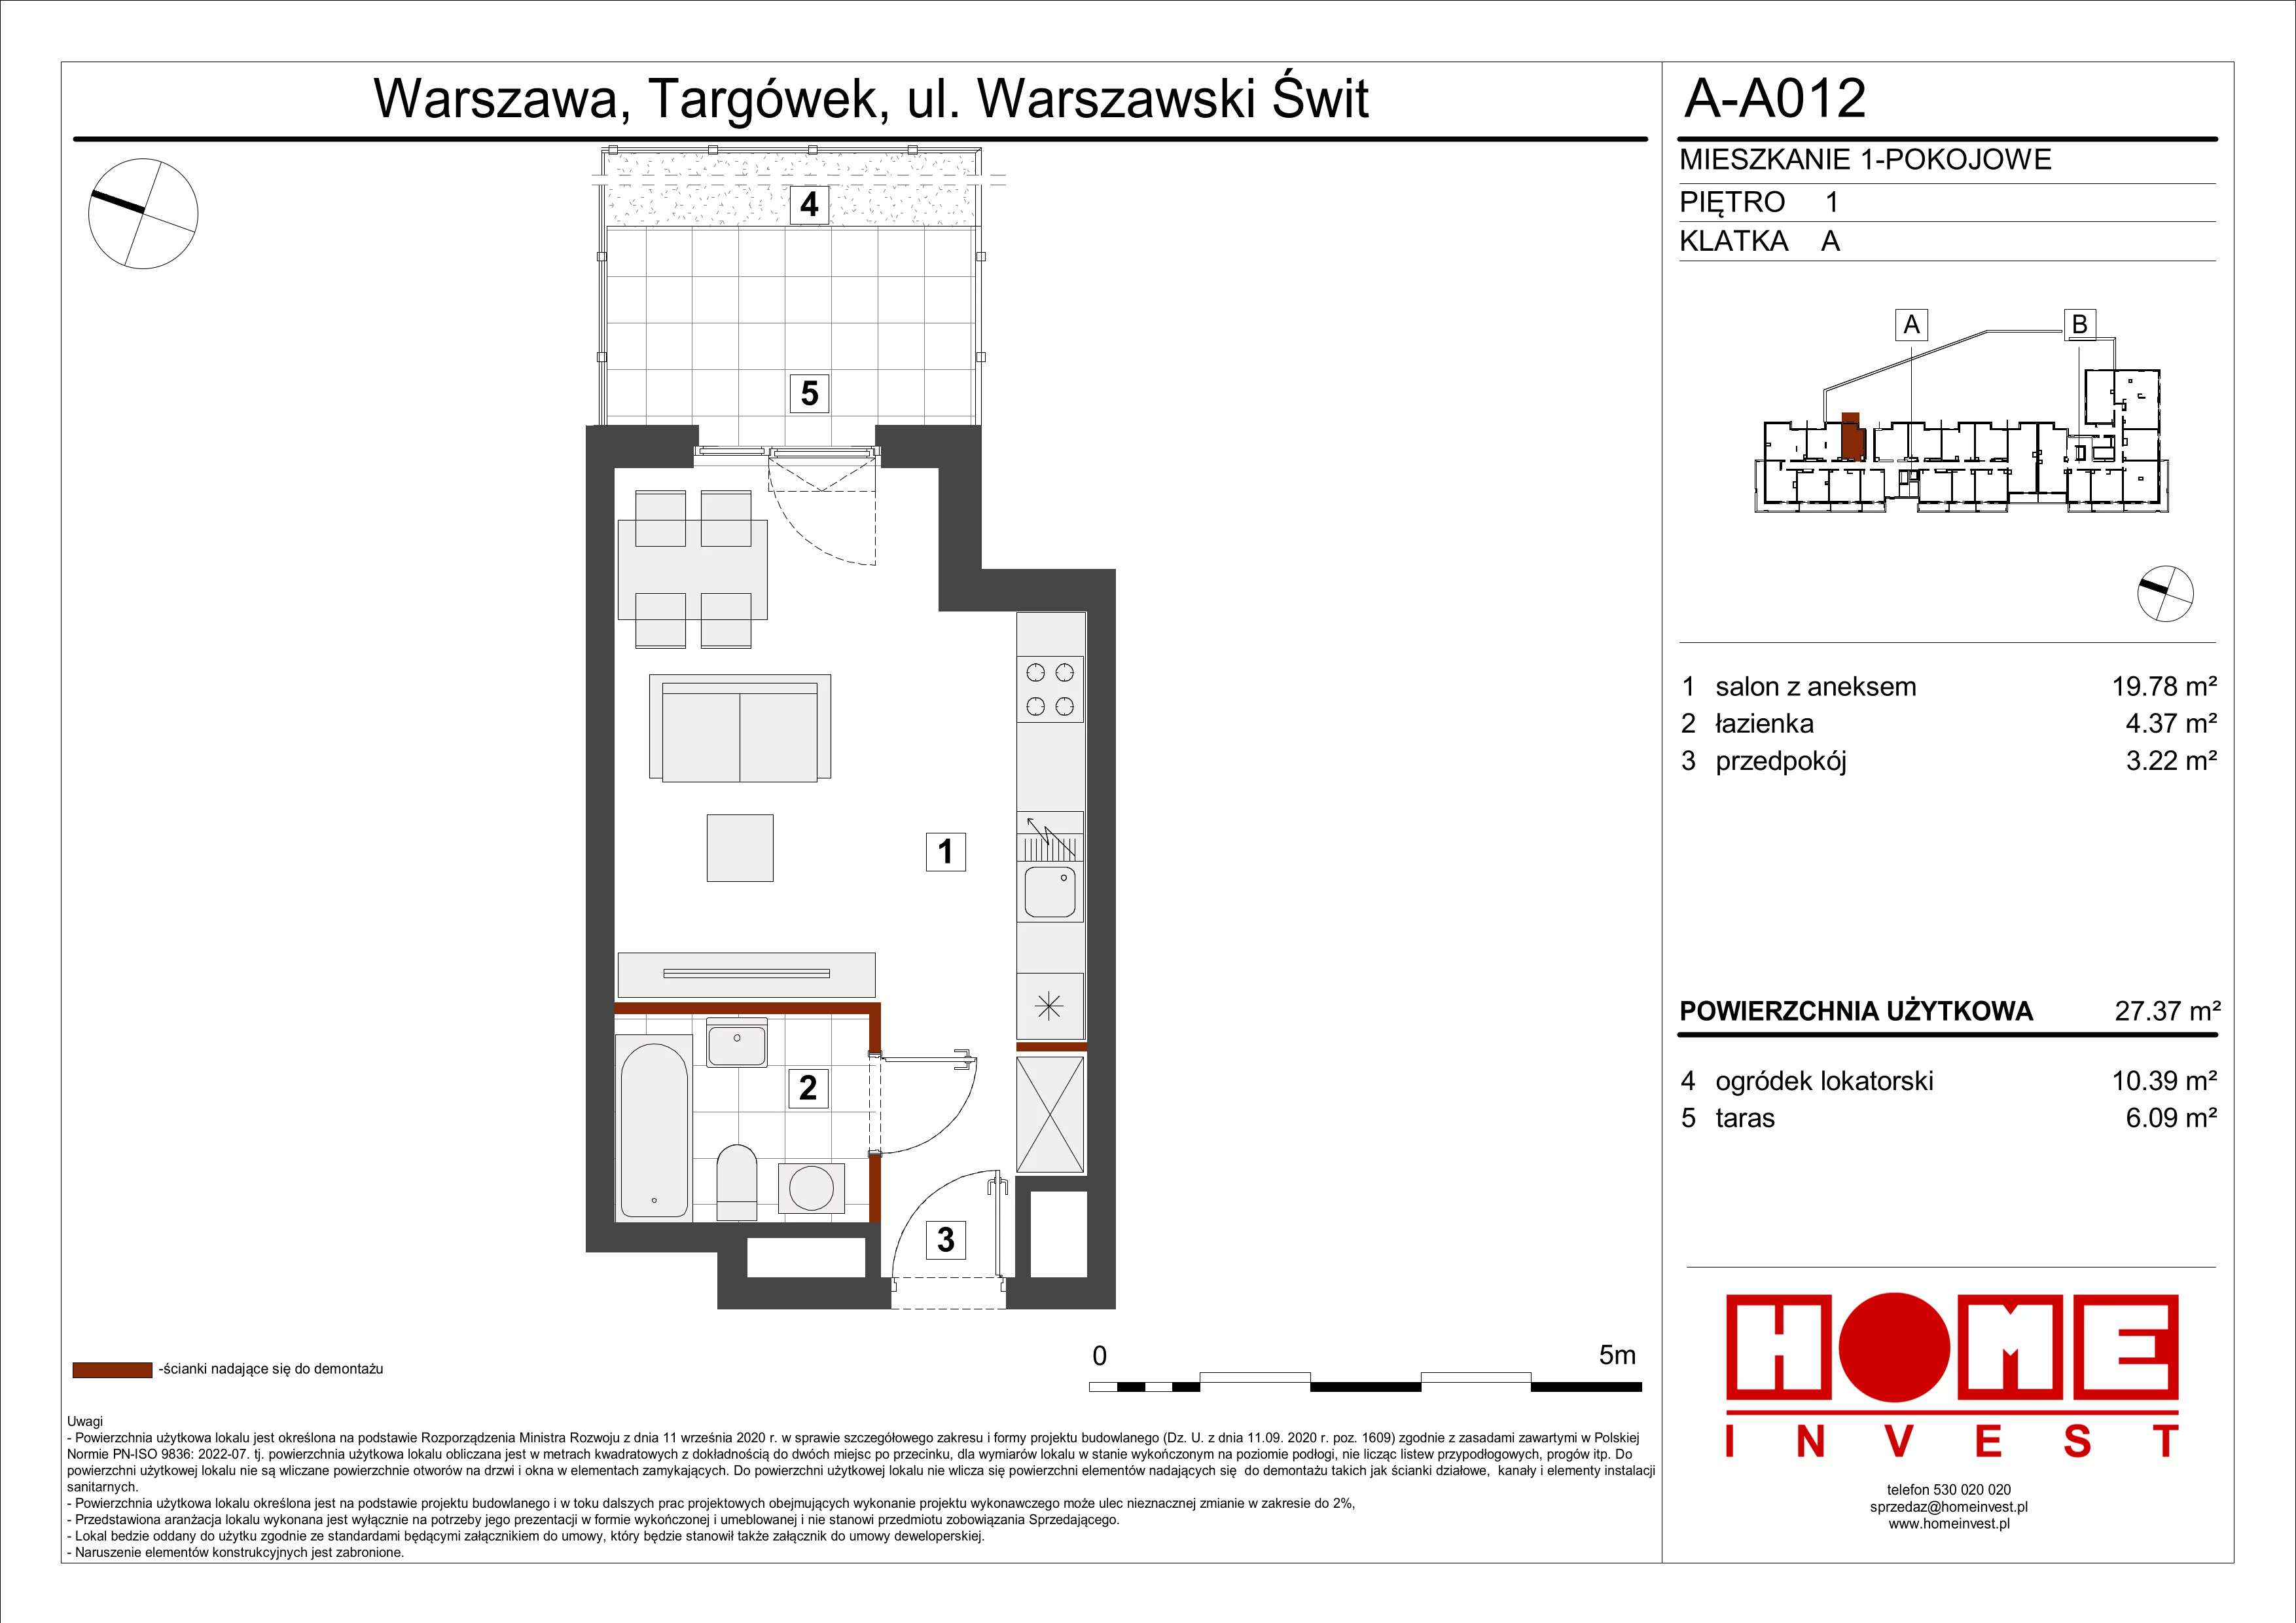 Mieszkanie 27,37 m², piętro 1, oferta nr A-A012, Warszawski Świt, Warszawa, Targówek, Bródno, ul. Warszawski Świt 5